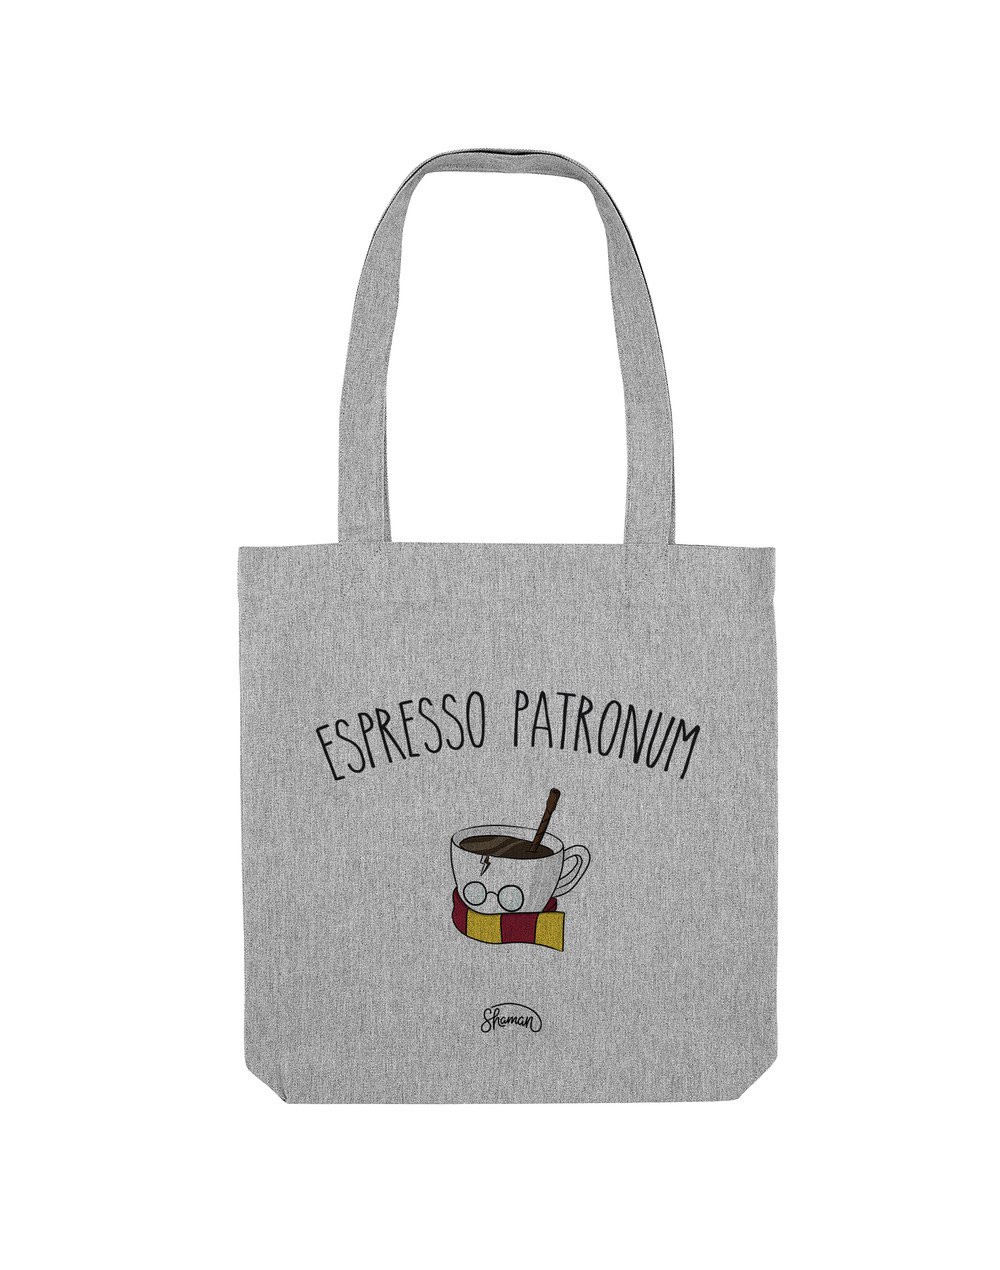 Tote Bag "Espresso patronum"